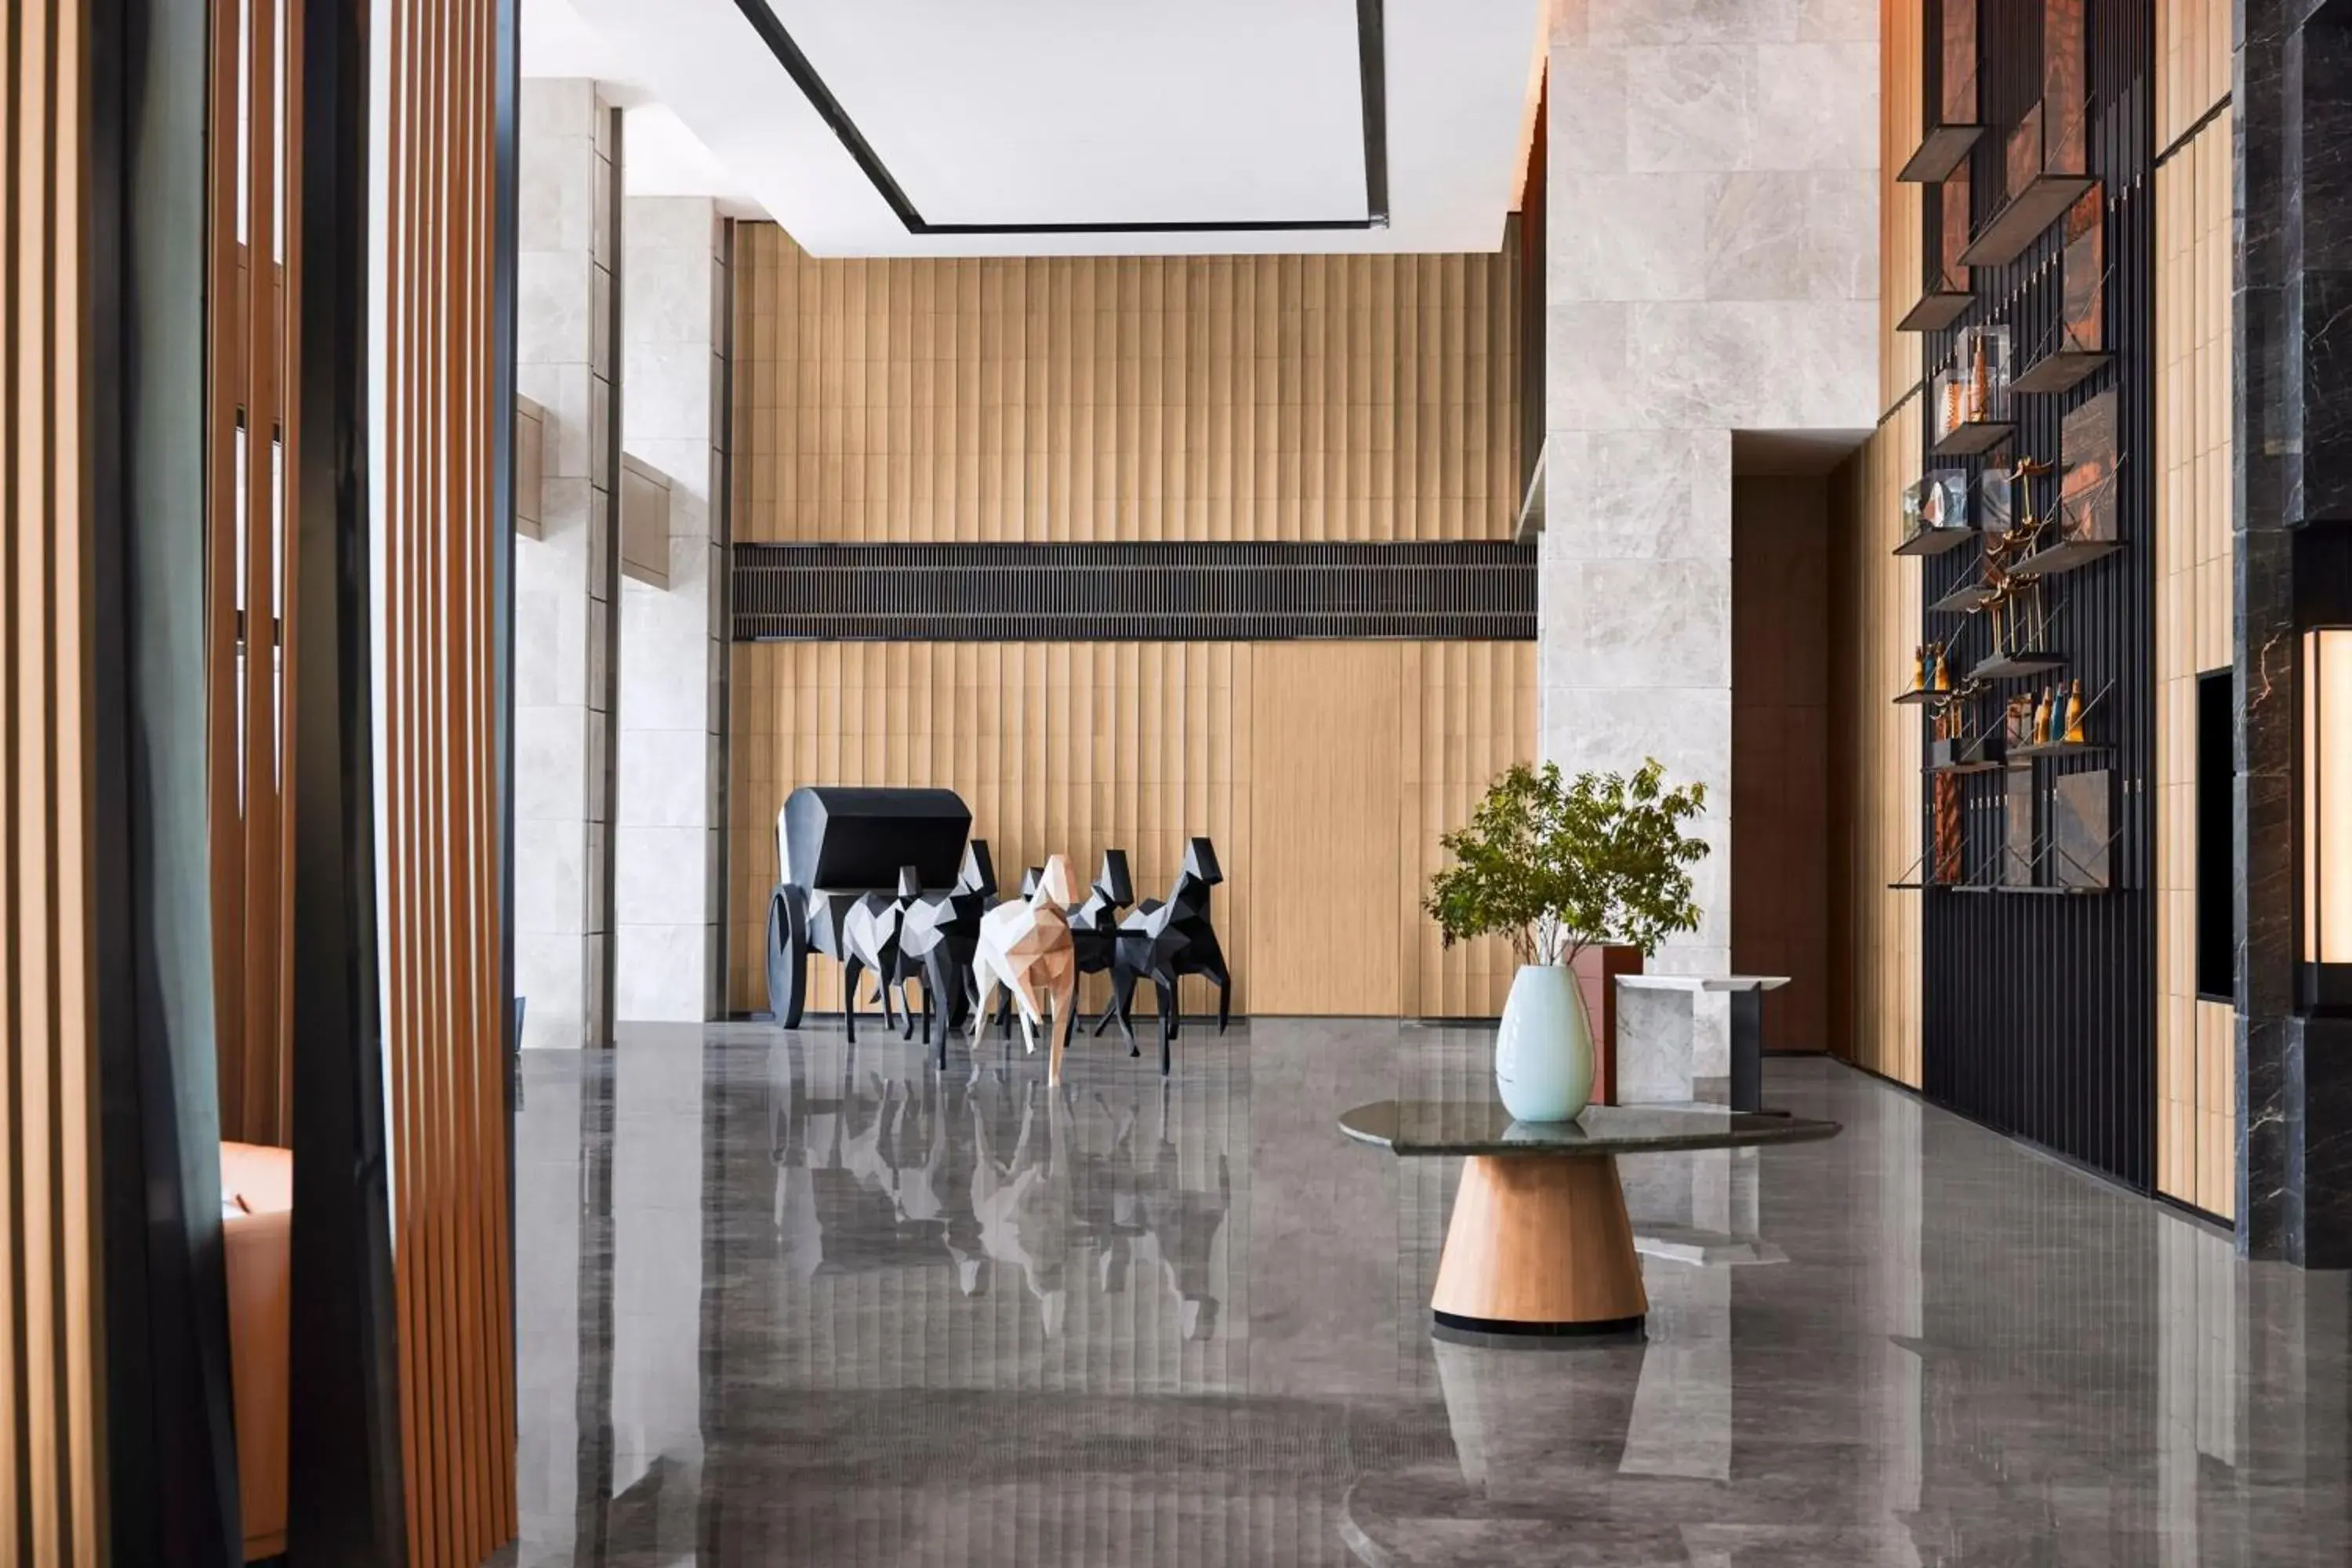 Lobby or reception in JW Marriott Hotel Xi'an